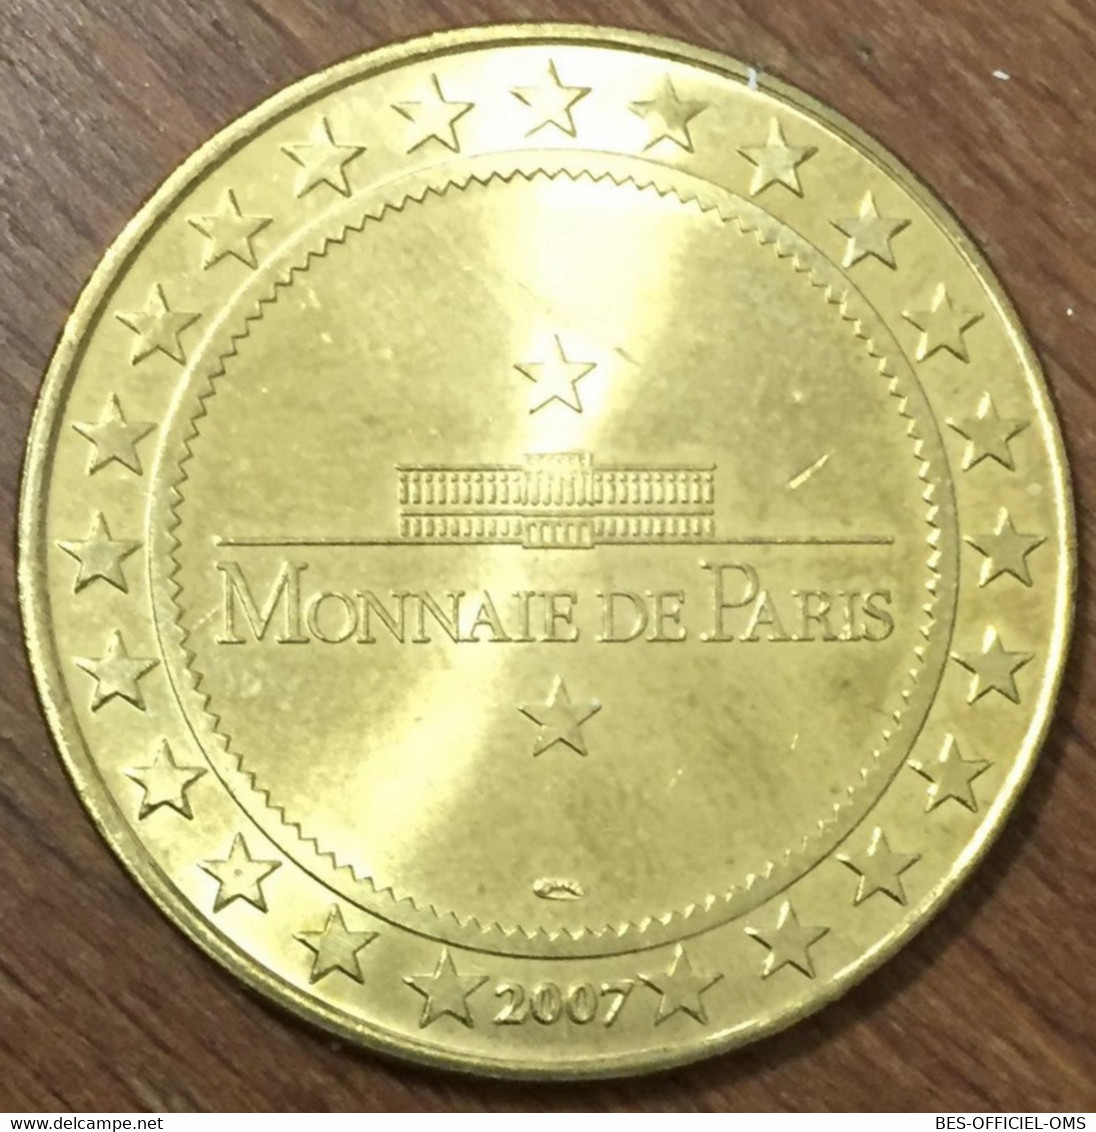 11 CHÂTEAU DE LASTOUR PAYS CATHARE MDP 2007 MÉDAILLE MONNAIE DE PARIS JETON TOURISTIQUE MEDALS COINS TOKENS - 2007